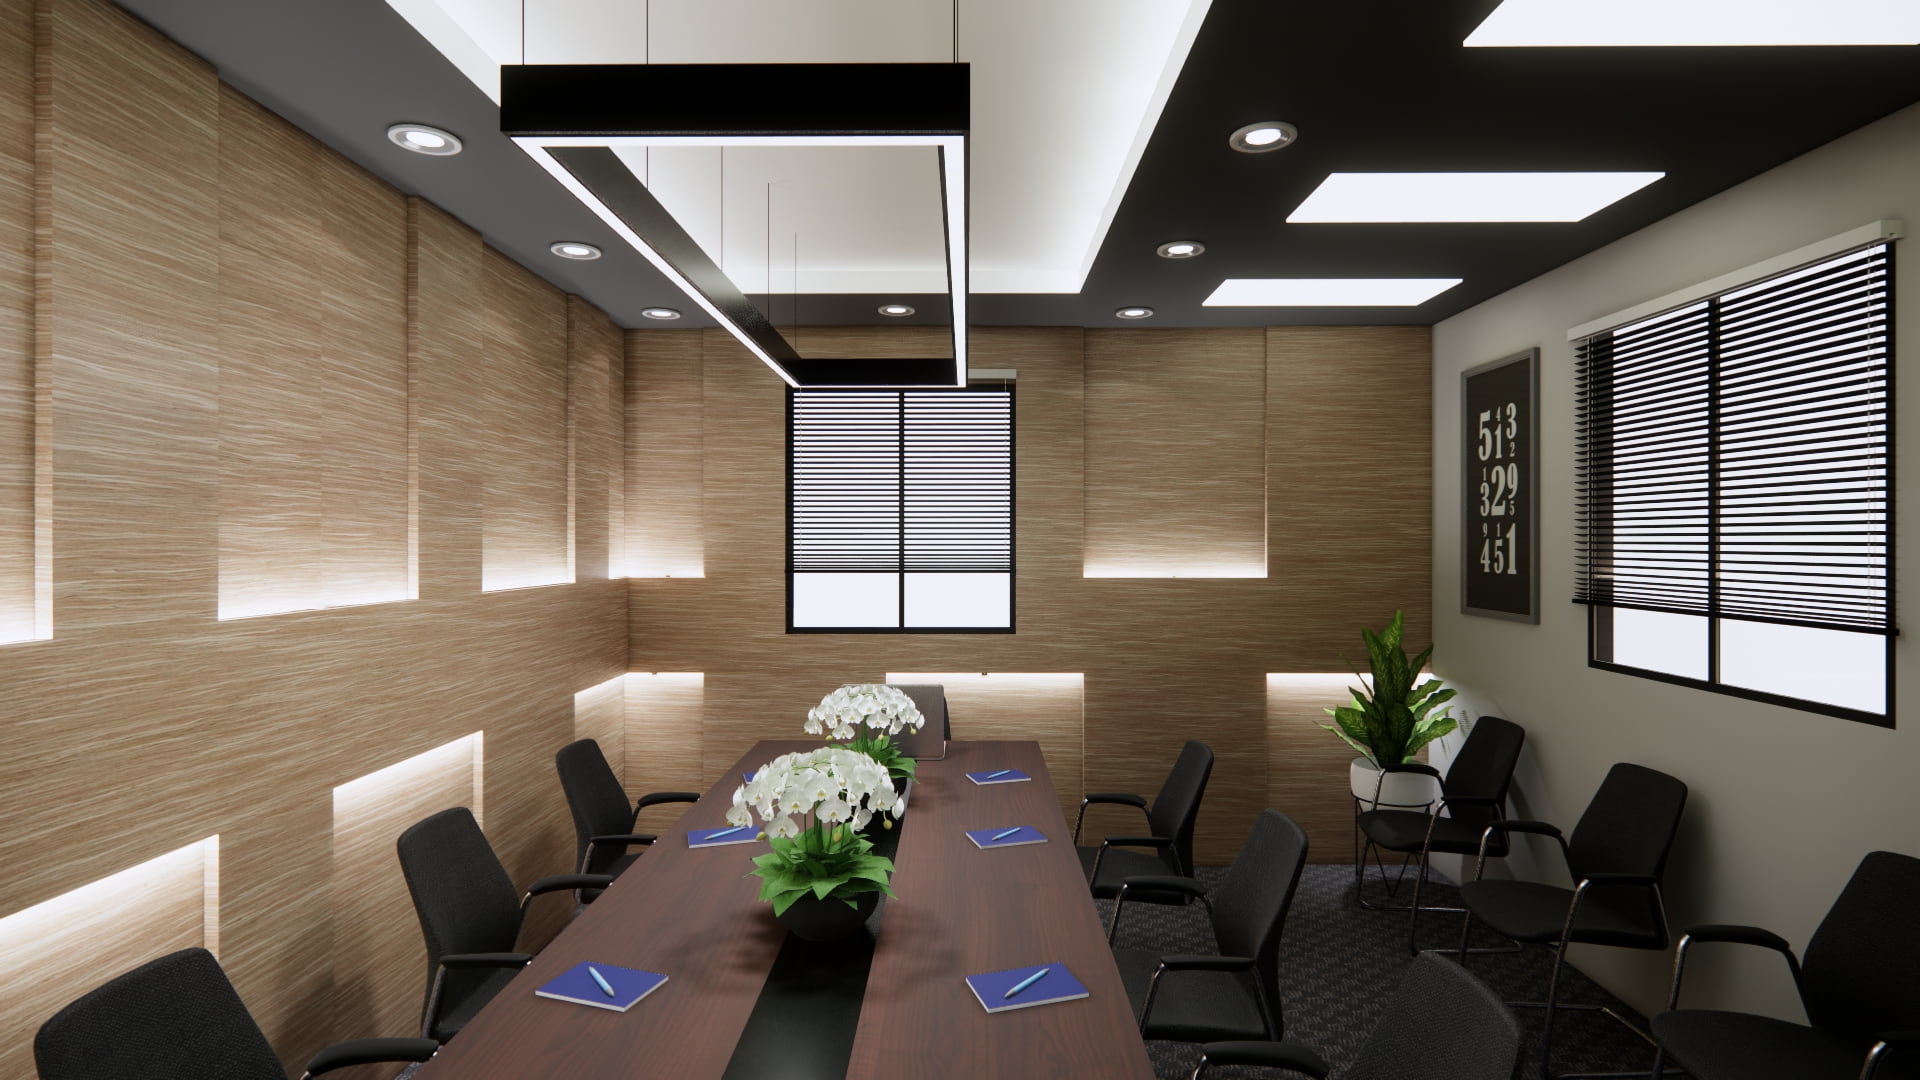 Thiết kế nội thất văn phòng HCM đáp ứng được các tiêu chí về mặt thẩm mỹ, sự tiện nghi 